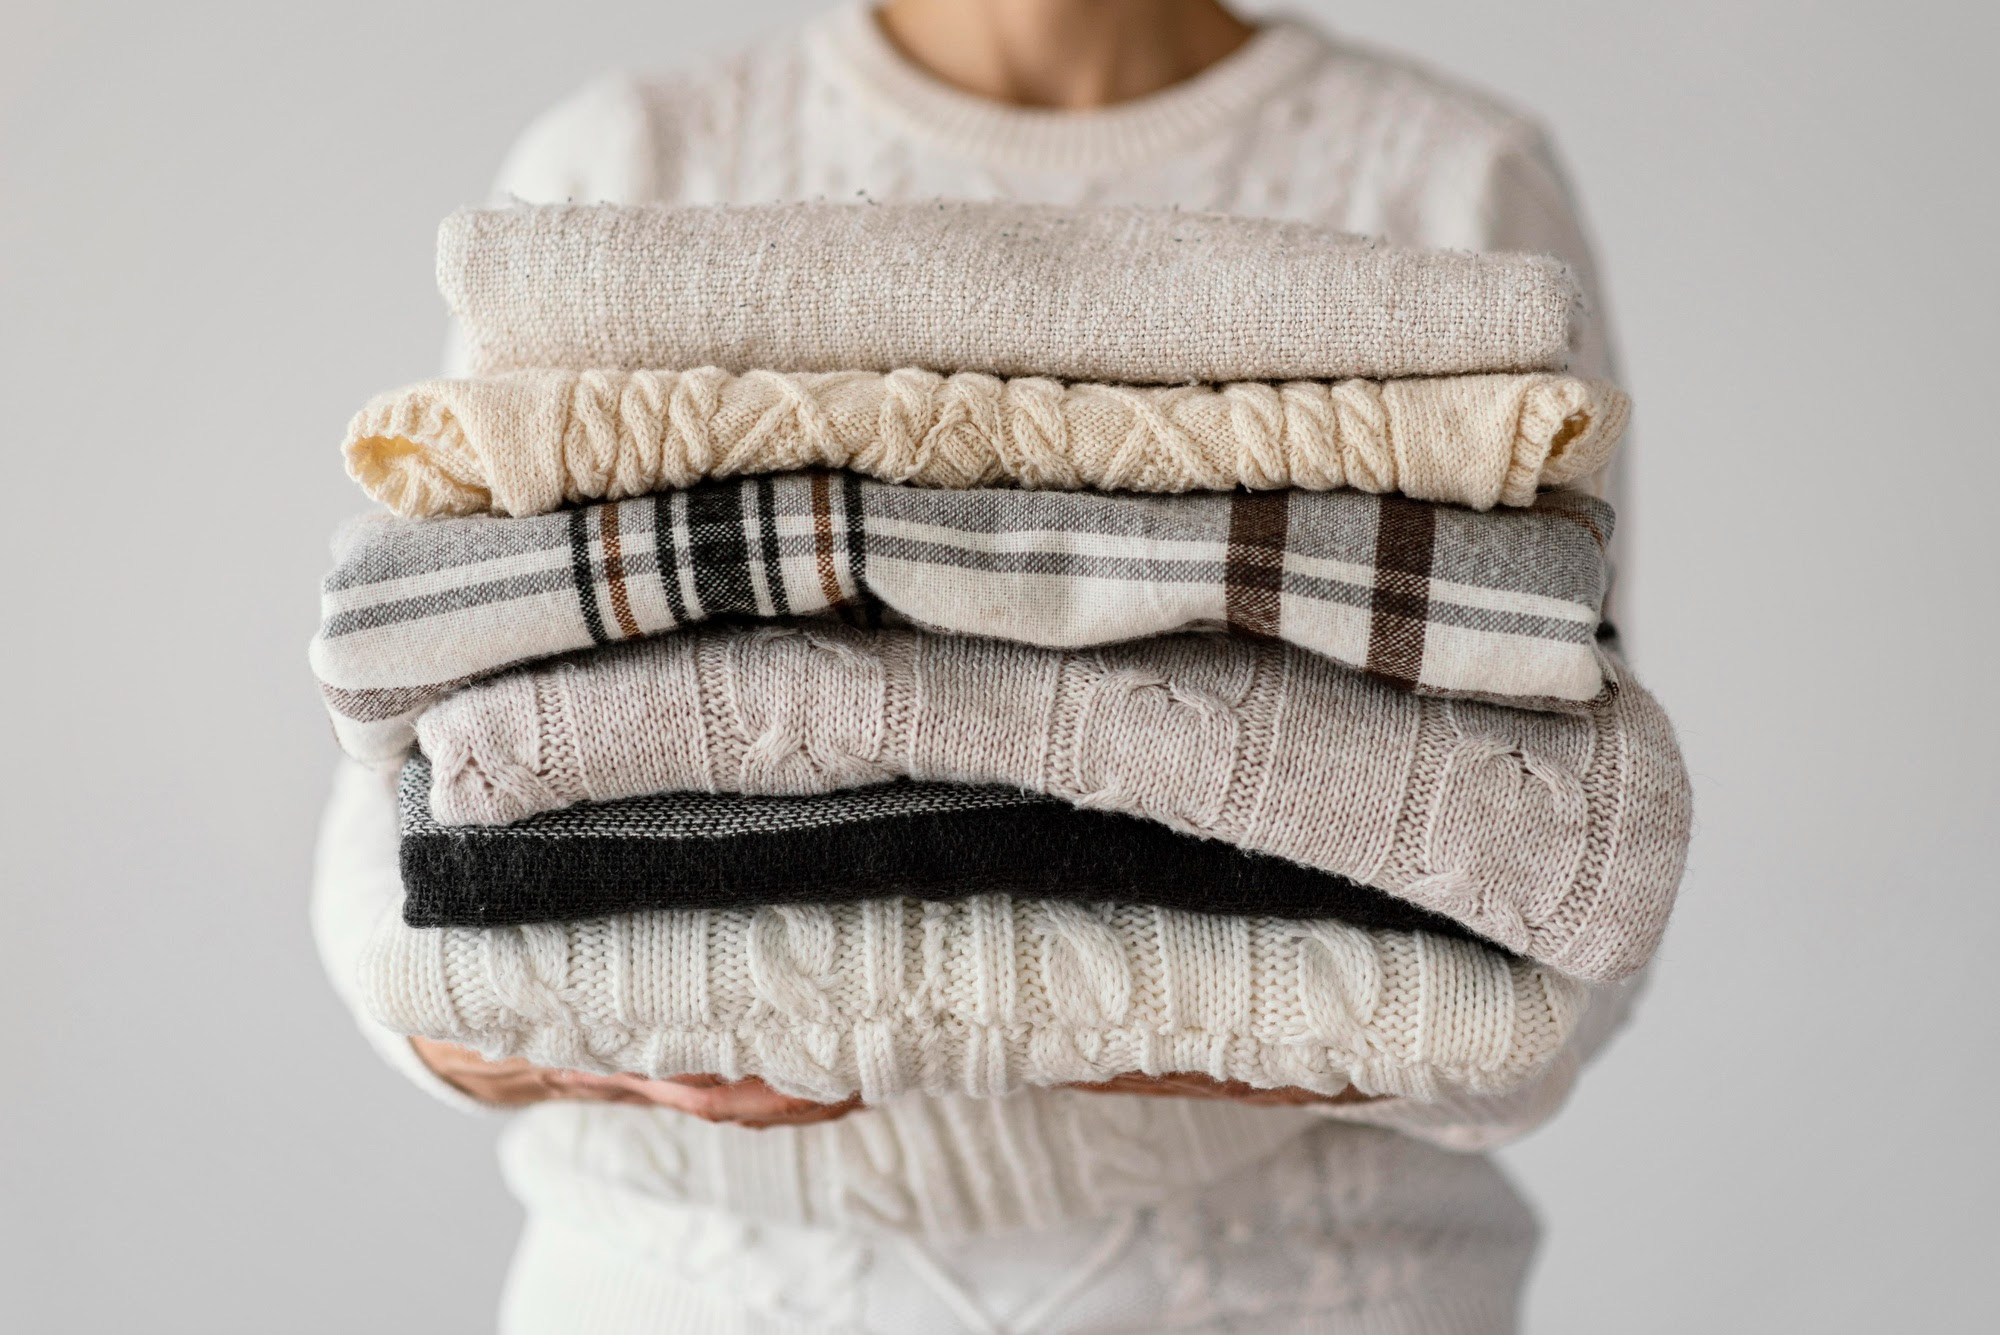 Aproveite o calor para lavar edredons e roupas de inverno! Confira dicas. Na foto, pessoa carregando roupas e cobertores.